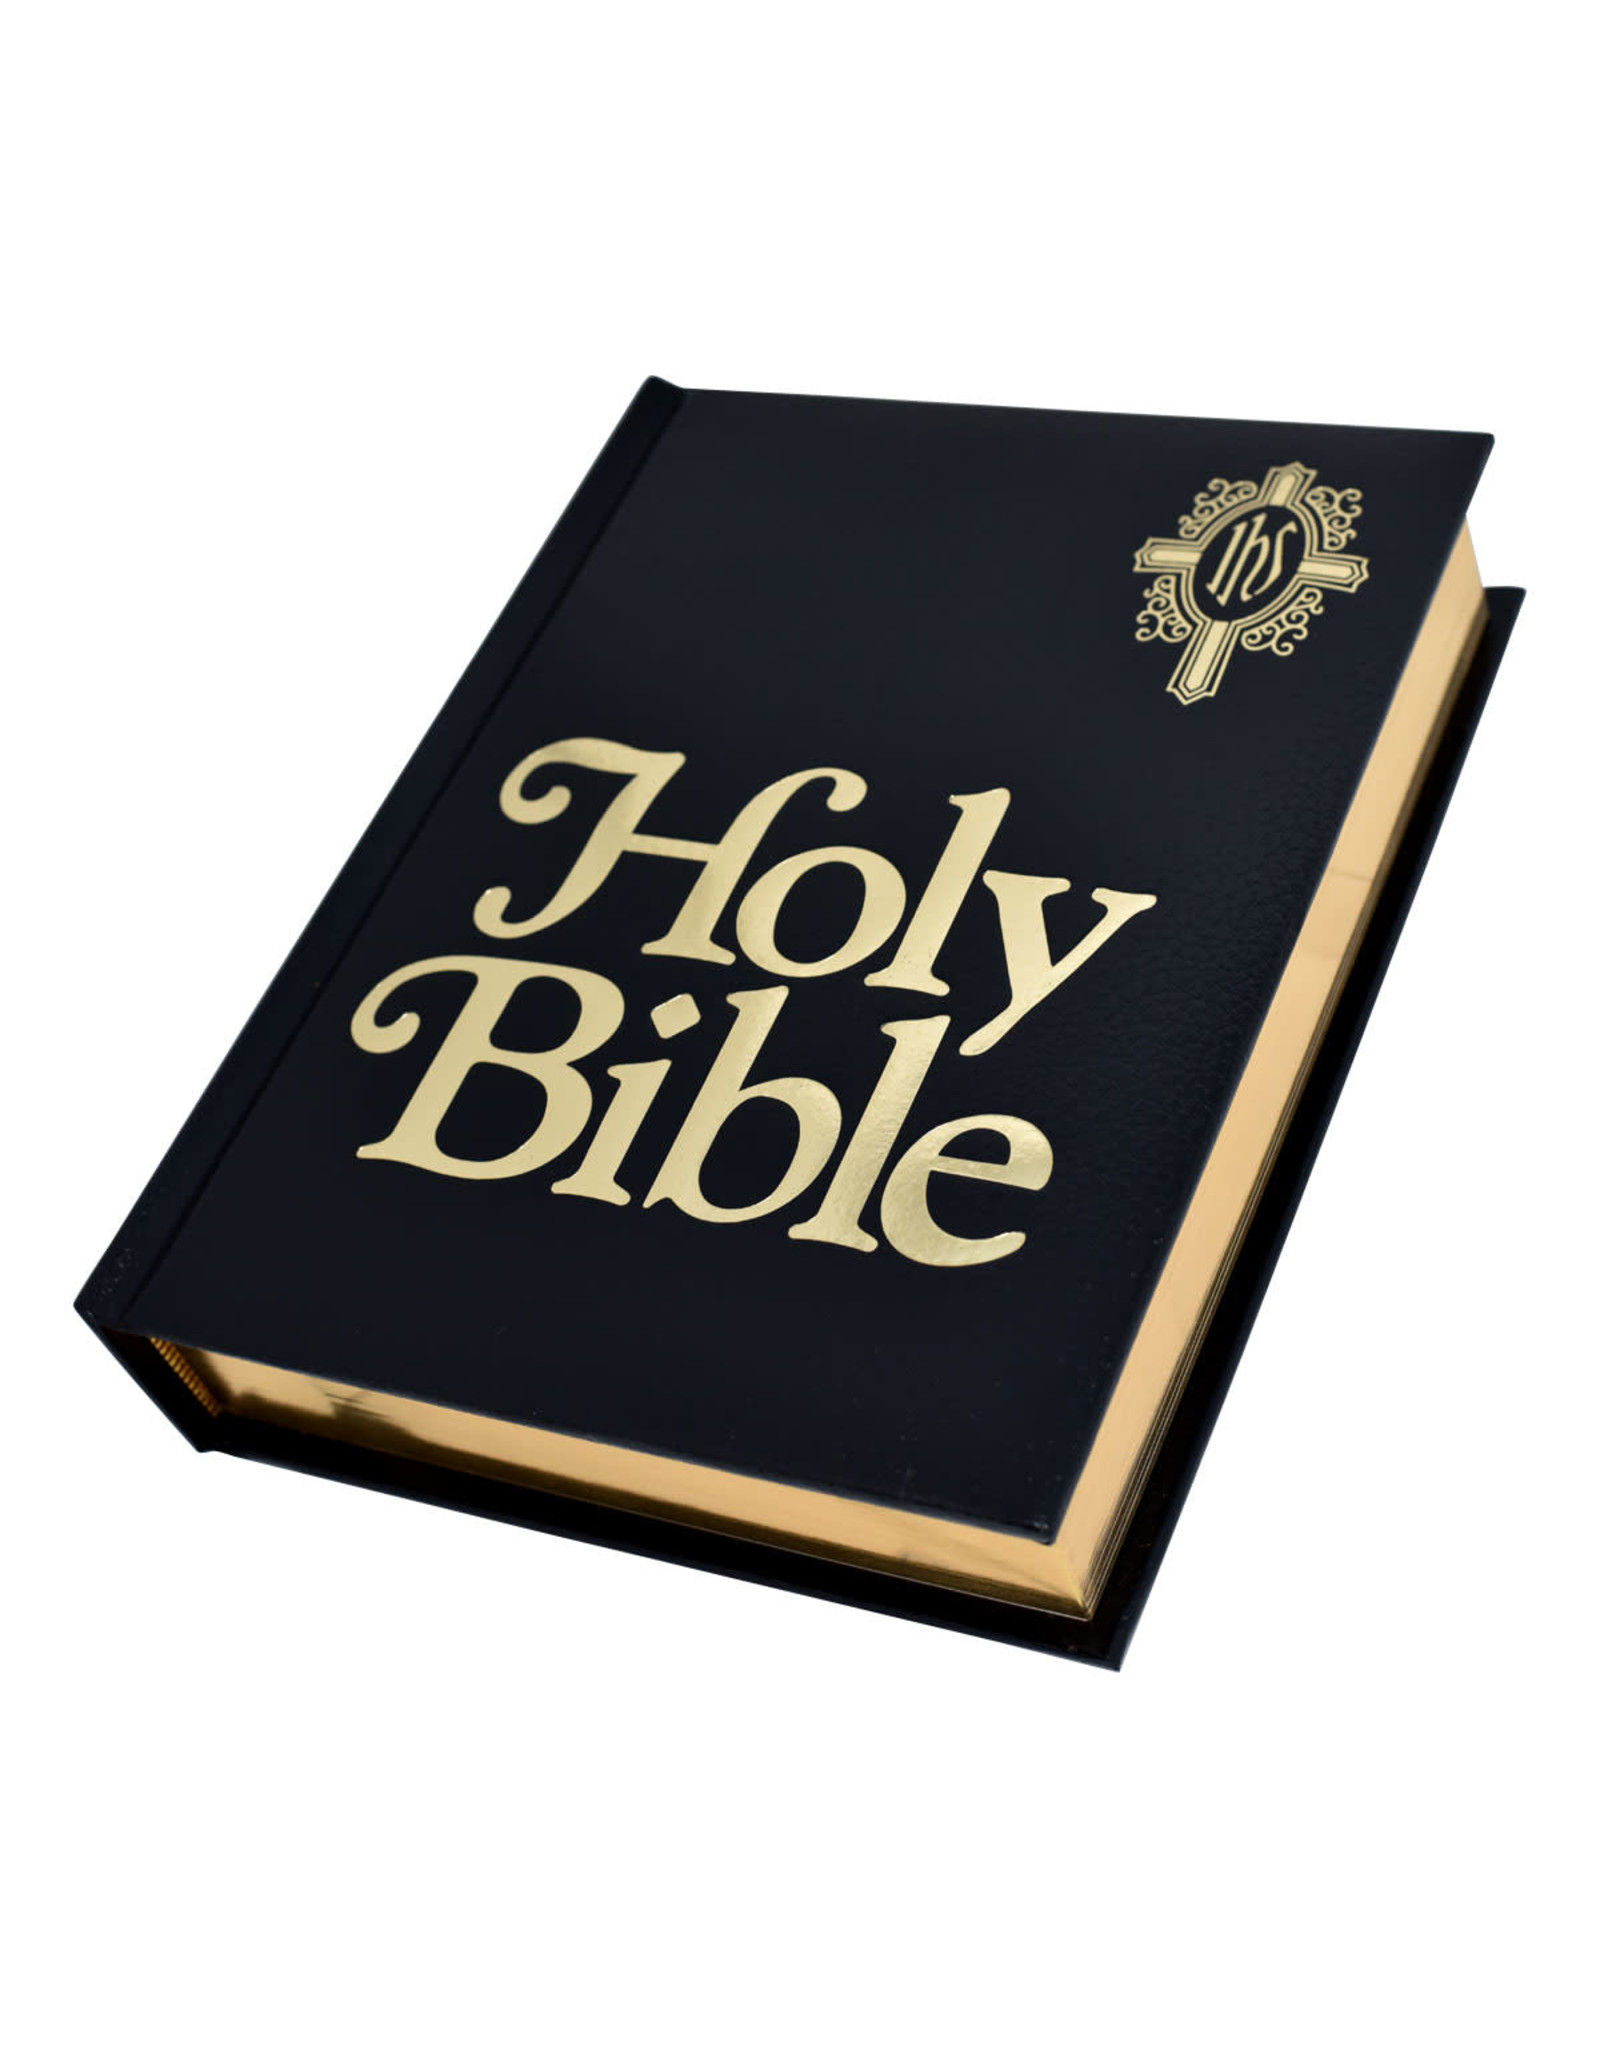 Catholic Book Publishing New Catholic Bible Family Edition - Black, Burgundy or White